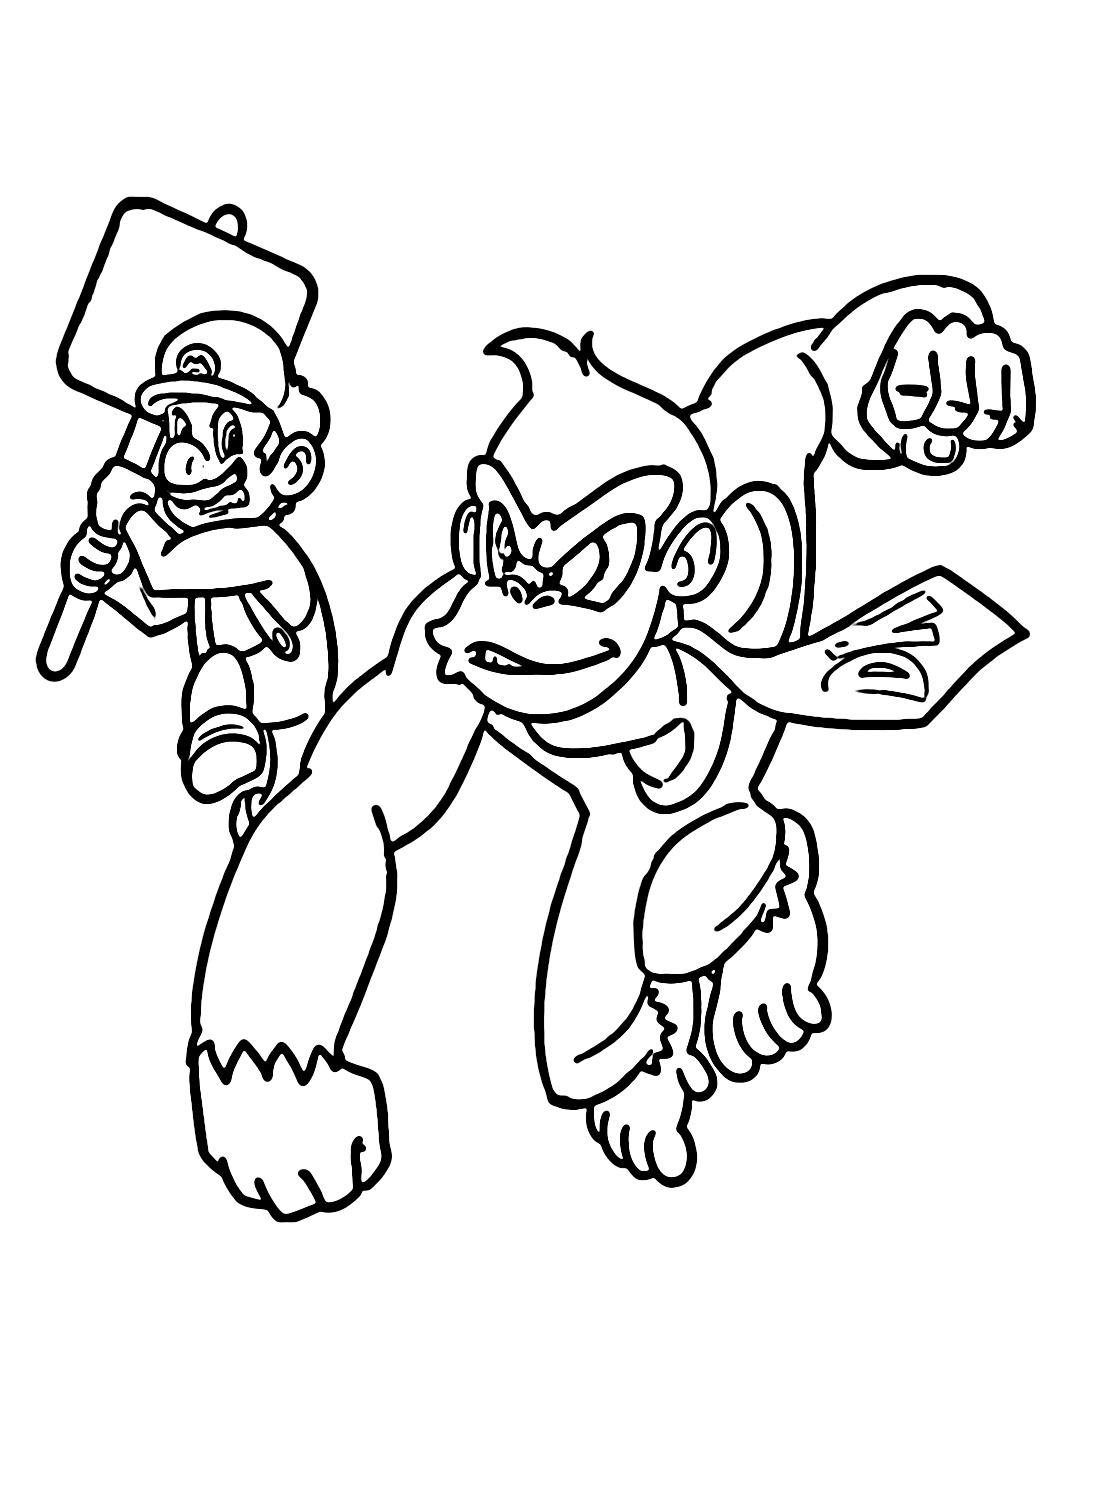 Mario versus Donkey Kong uit Donkey Kong